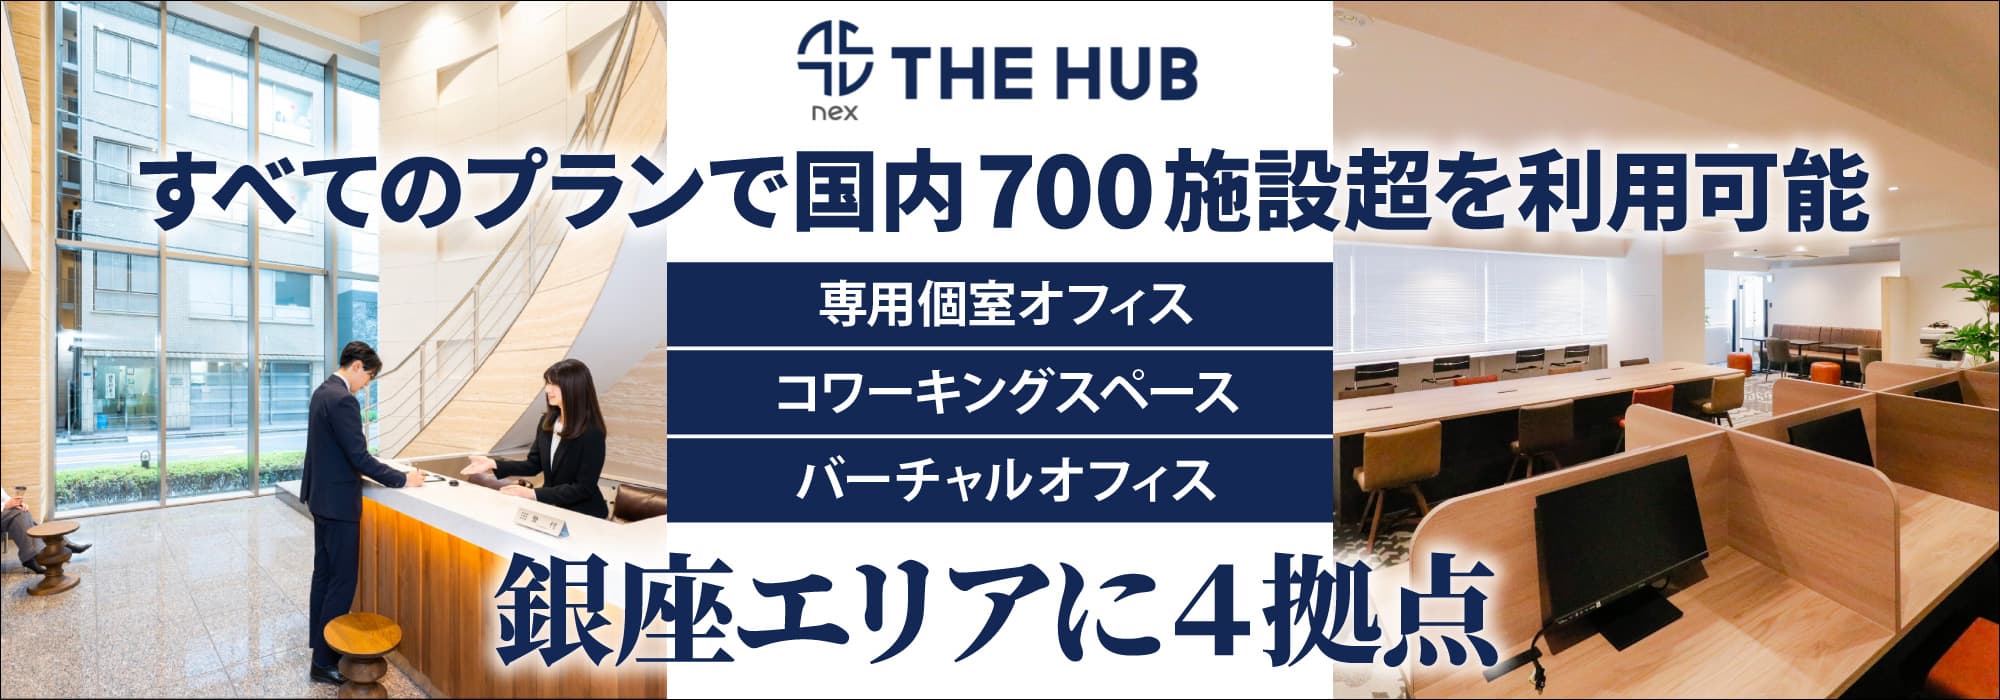 銀座エリアに４拠点、創造力と生産性を刺激するレンタルオフィス【THE HUB】すべてのプランで国内700施設超を利用可能